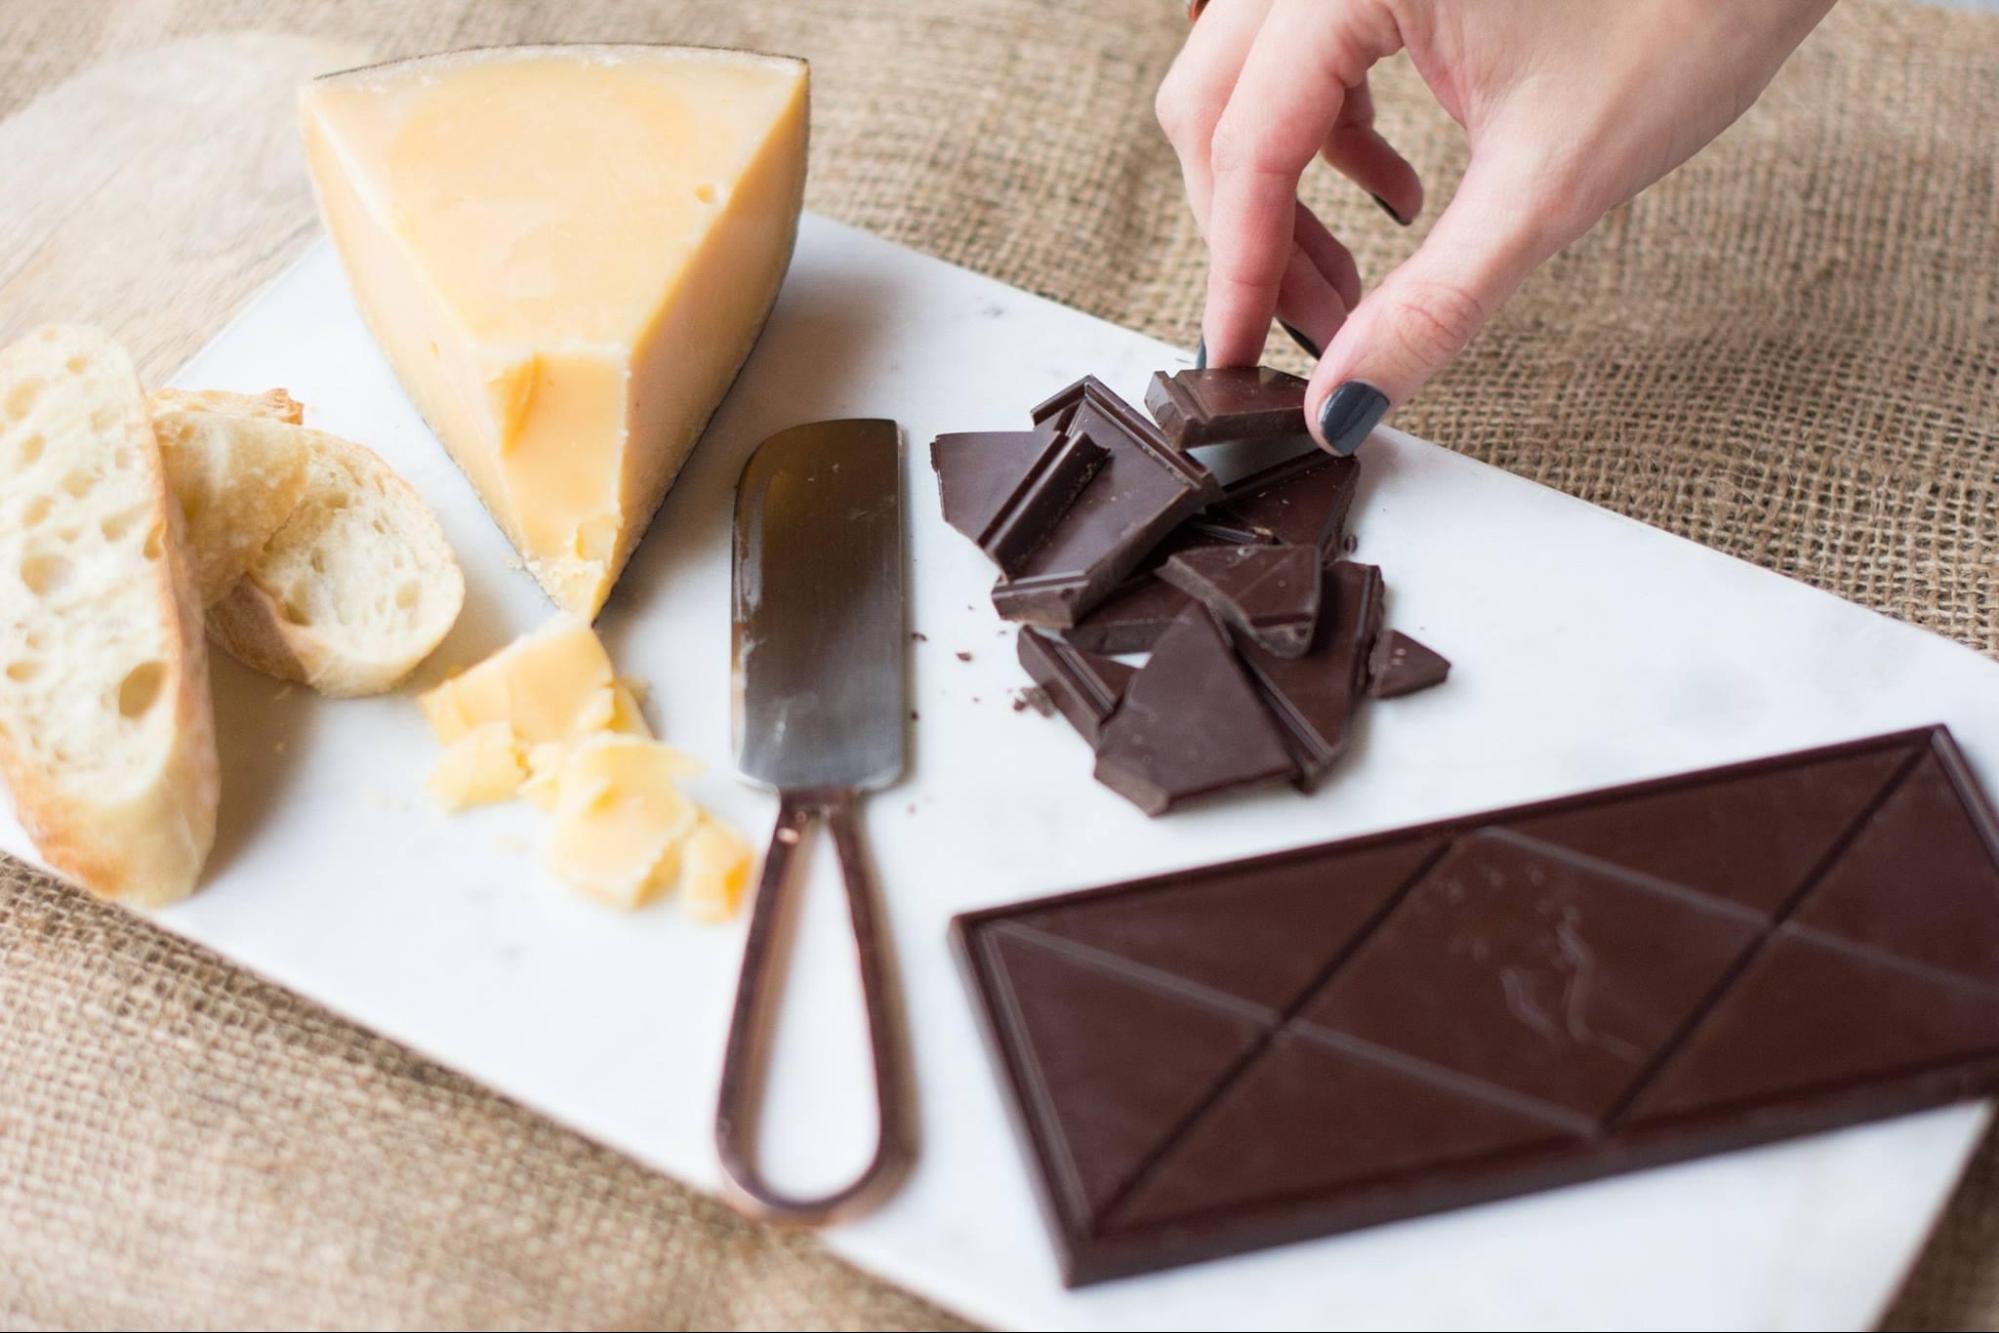 Scharffen Berger при создании первой партии своего шоколада использовали смесь из восьми различных сортов какао-бобов.